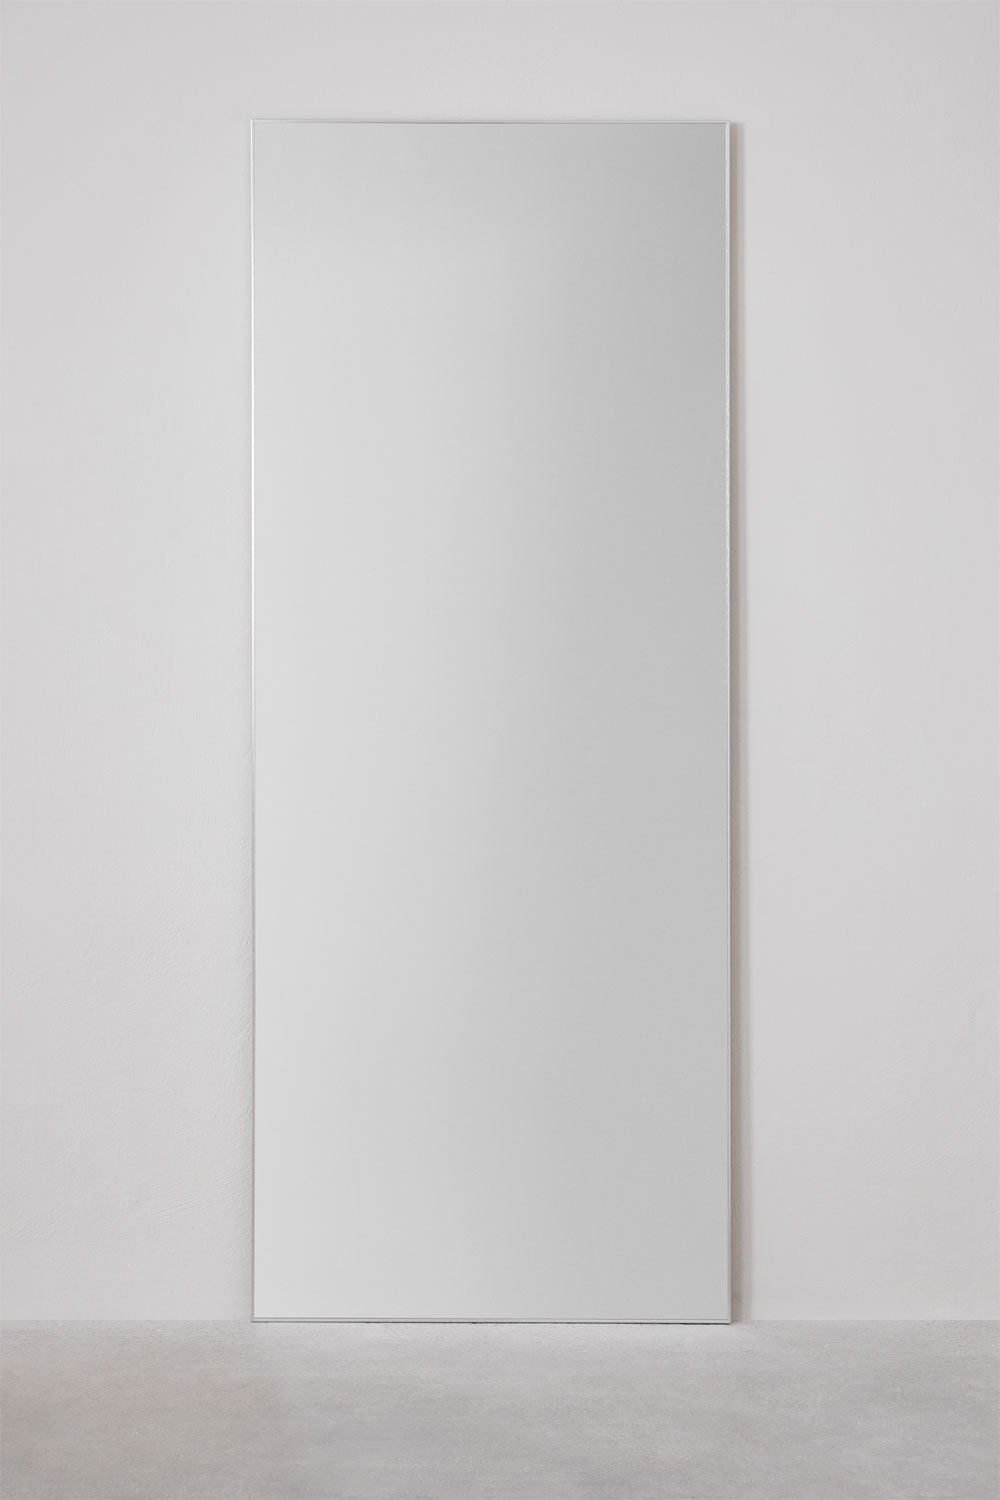 Specchio da terra rettangolare in alluminio (80x200 cm) Ondra, immagine della galleria 2